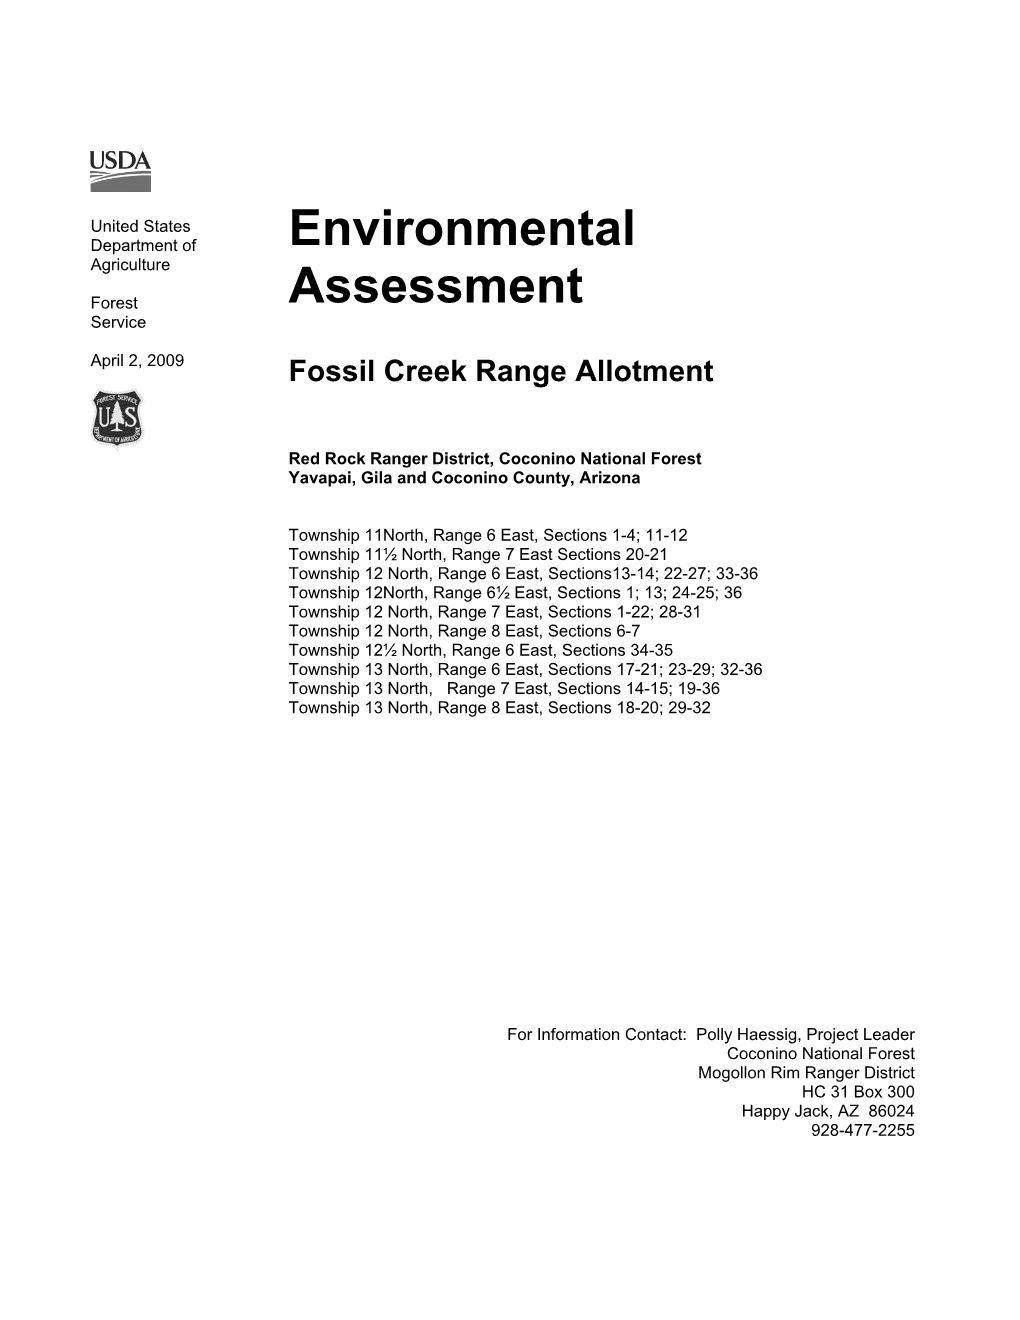 Fossil Creek Range Allotment Environmental Assessment